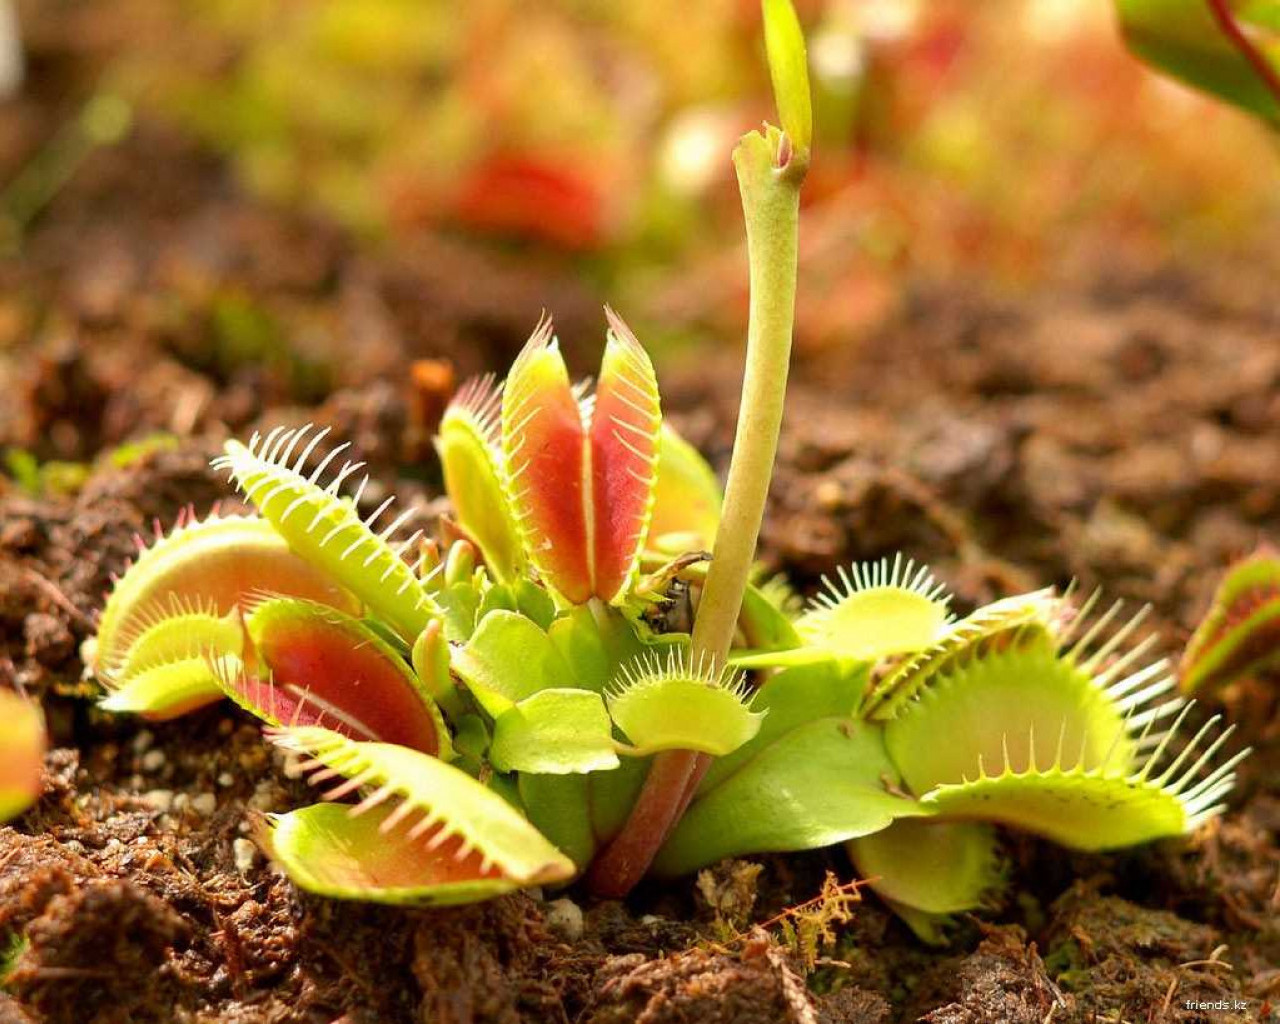 Удивительный мир растений - как они дышат, питаются и размножаются